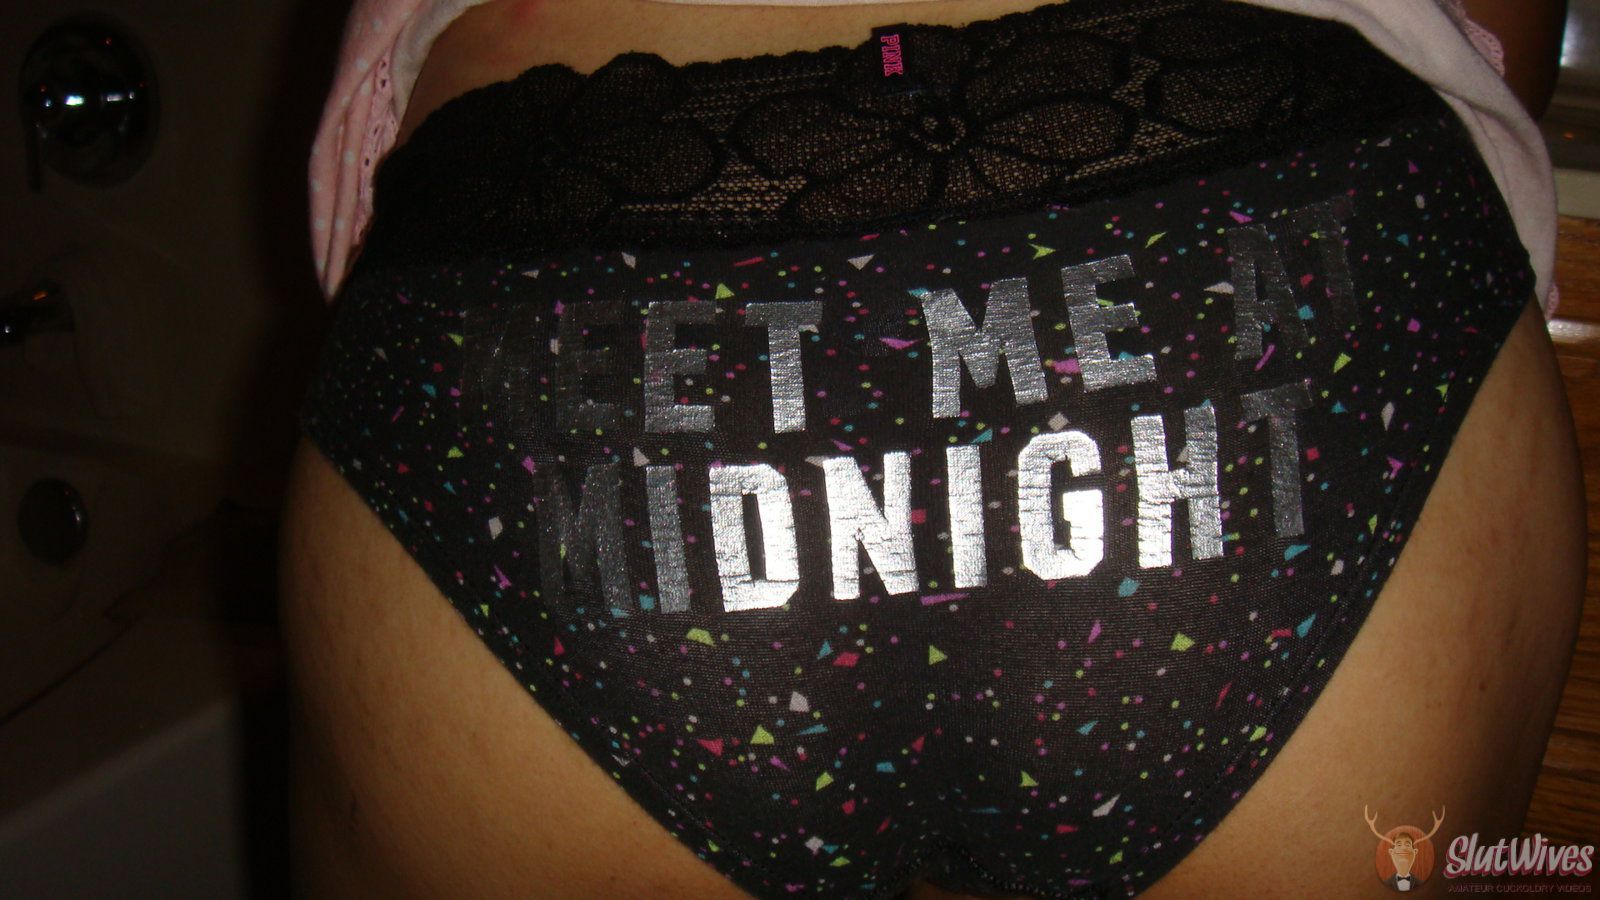 ''Meet me at n=mid-night" panties